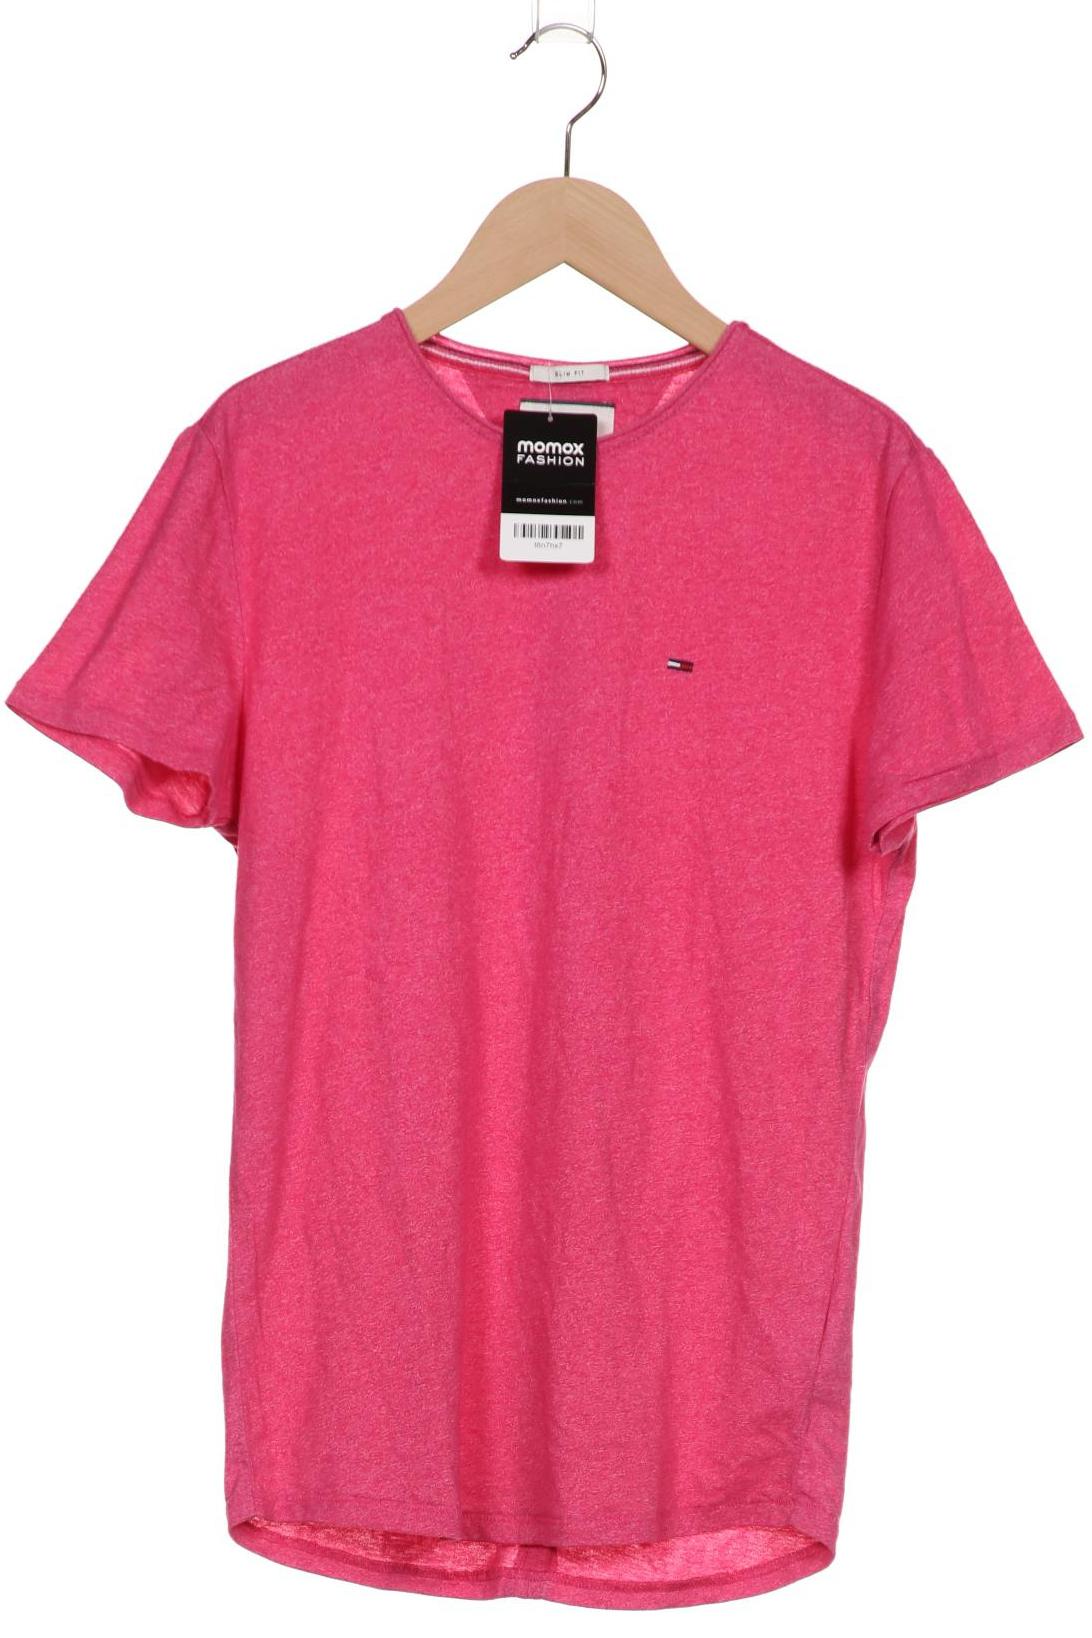 Tommy Jeans Herren T-Shirt, pink von Tommy Jeans